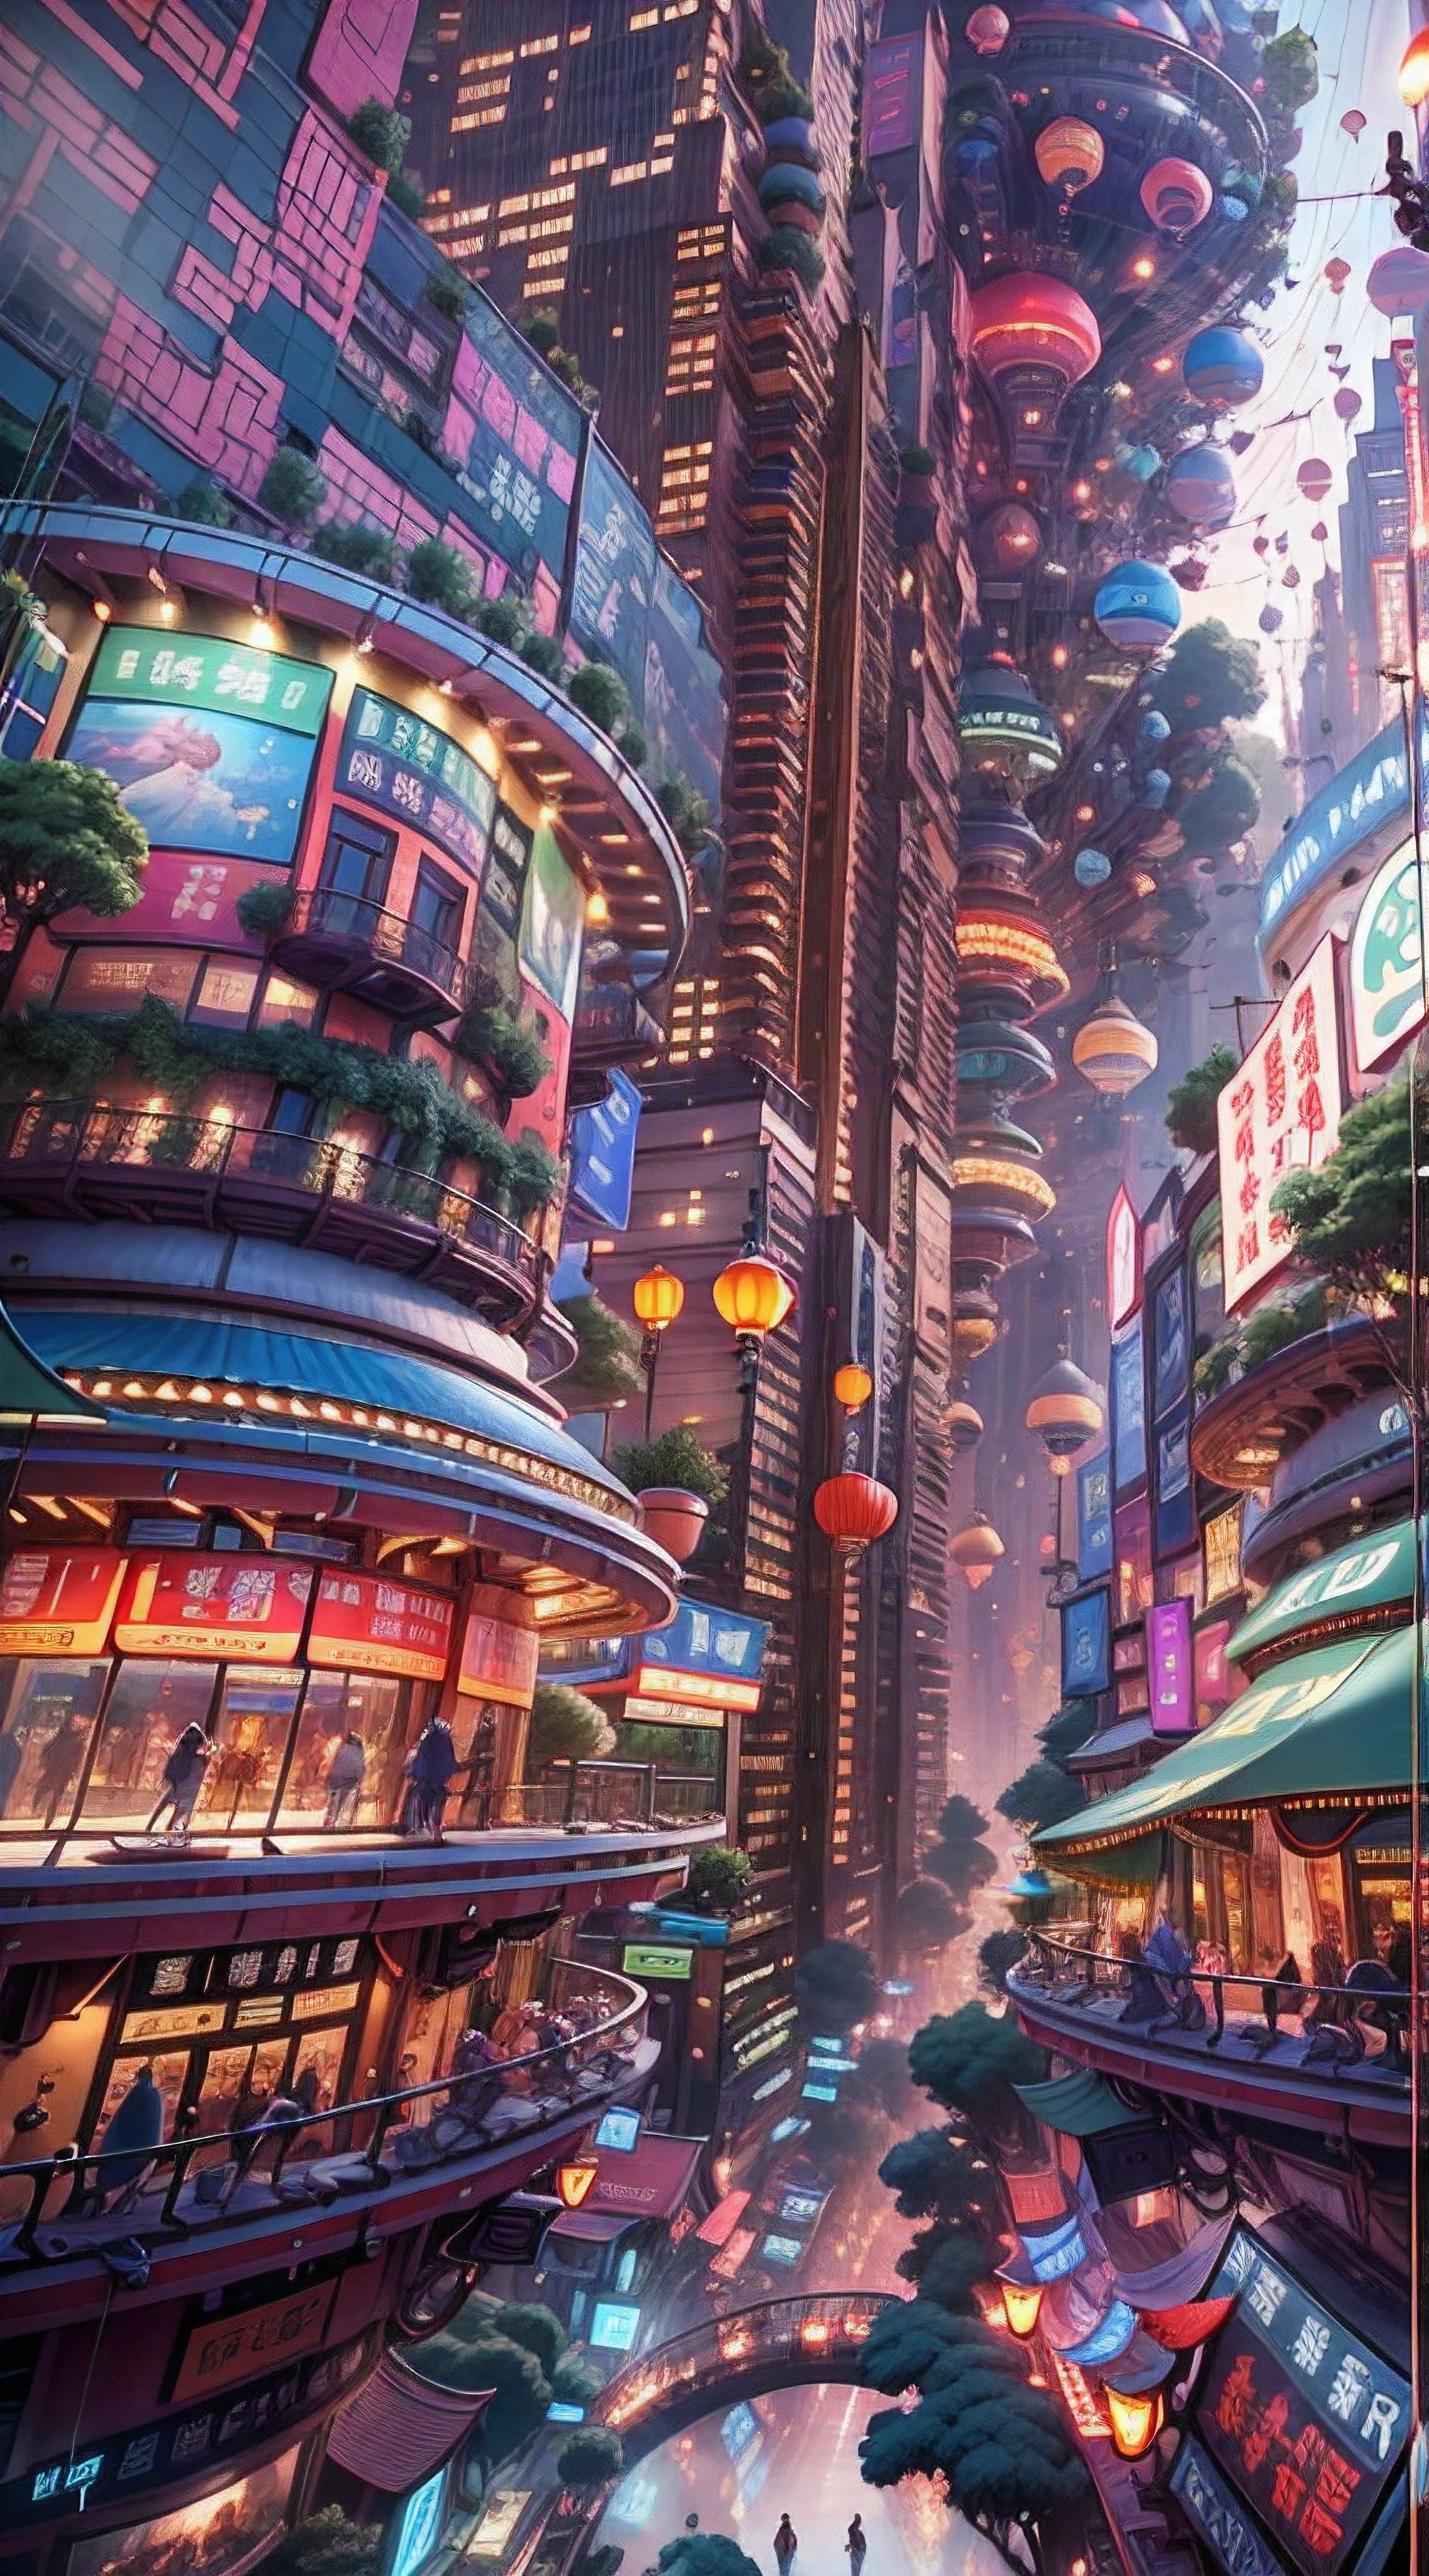 Tauchen Sie ein in eine faszinierende Vision der Zukunft durch fesselnde futuristische Bilder der Stadt Shanghai. Der hoch aufragende riesige Wolkenkratzer ist mit goldenen Ornamenten und einer glatten Glasfassade verziert，den Himmel durchbohren, Die leuchtenden Lichter der Stadt, die niemals schläft. Mitten im geschäftigen Stadtleben, Ein ikonisches riesiges Hightech-Gebäude, Seine architektonischen Wunder werden in einem futuristischen Stil hervorgehoben. Die Stadt ist voller Leben，Voller Leben。，Voller Leben。，Voller Leben。，Voller Leben。，Voller Leben。，Voller Leben。，Voller Leben。，Voller Leben。，Voller Leben。，Voller Leben。，Voller Leben。，Voller Leben。，Voller Leben。，Voller Leben。，Voller Leben。，Voller Leben。，Voller Leben。，Voller Leben。，Voller Leben。，Voller Leben。，Voller Leben。，Voller Leben。，Voller Leben。，Voller Leben。，Voller Leben。，Voller Reichtum。，Voller Luxus。，Voller Technik。。, Modernste Technologie fügt sich nahtlos in die traditionelle chinesische Luxusstadtstruktur ein. Dieses atemberaubende Kunstwerk, Verwenden Sie Pixai, um leistungsstarke KI-Modelle zum Leben zu erwecken, Zeigen Sie die grenzenlose Kreativität und Möglichkeiten unserer Vorstellungskraft. Erleben Sie die Zukunft des Stadtbildes bei Pixai，Tauchen Sie ein in eine visionäre Kunstwelt